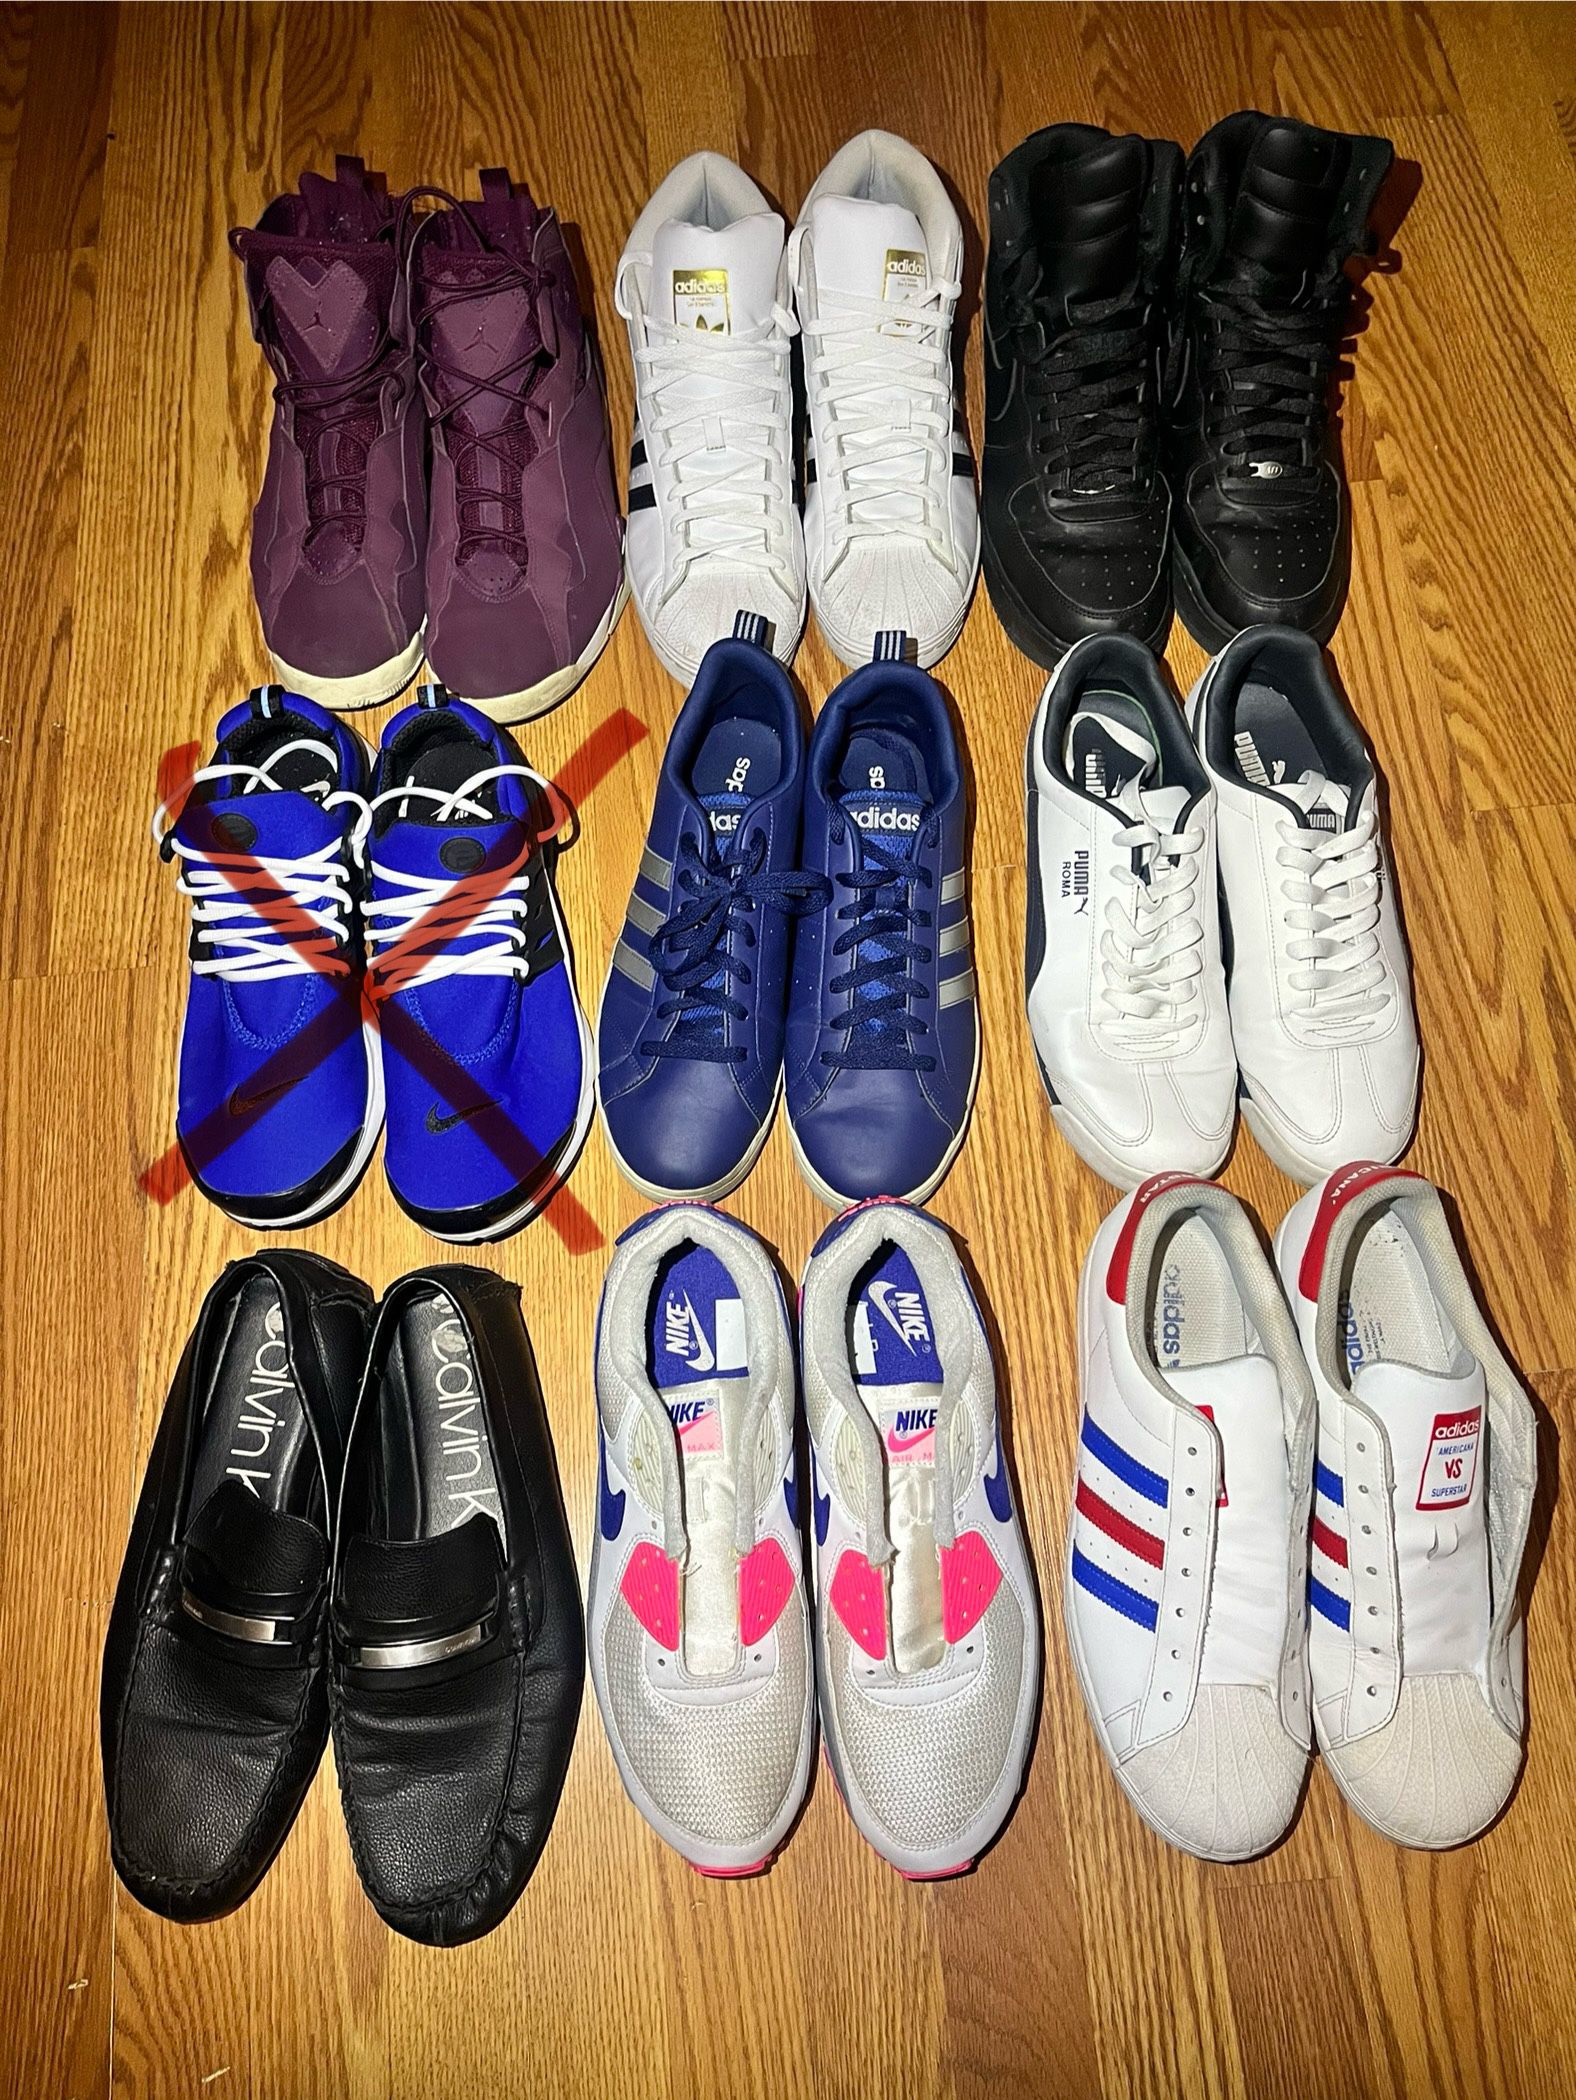 Men’s Size 12 Shoe Lot 